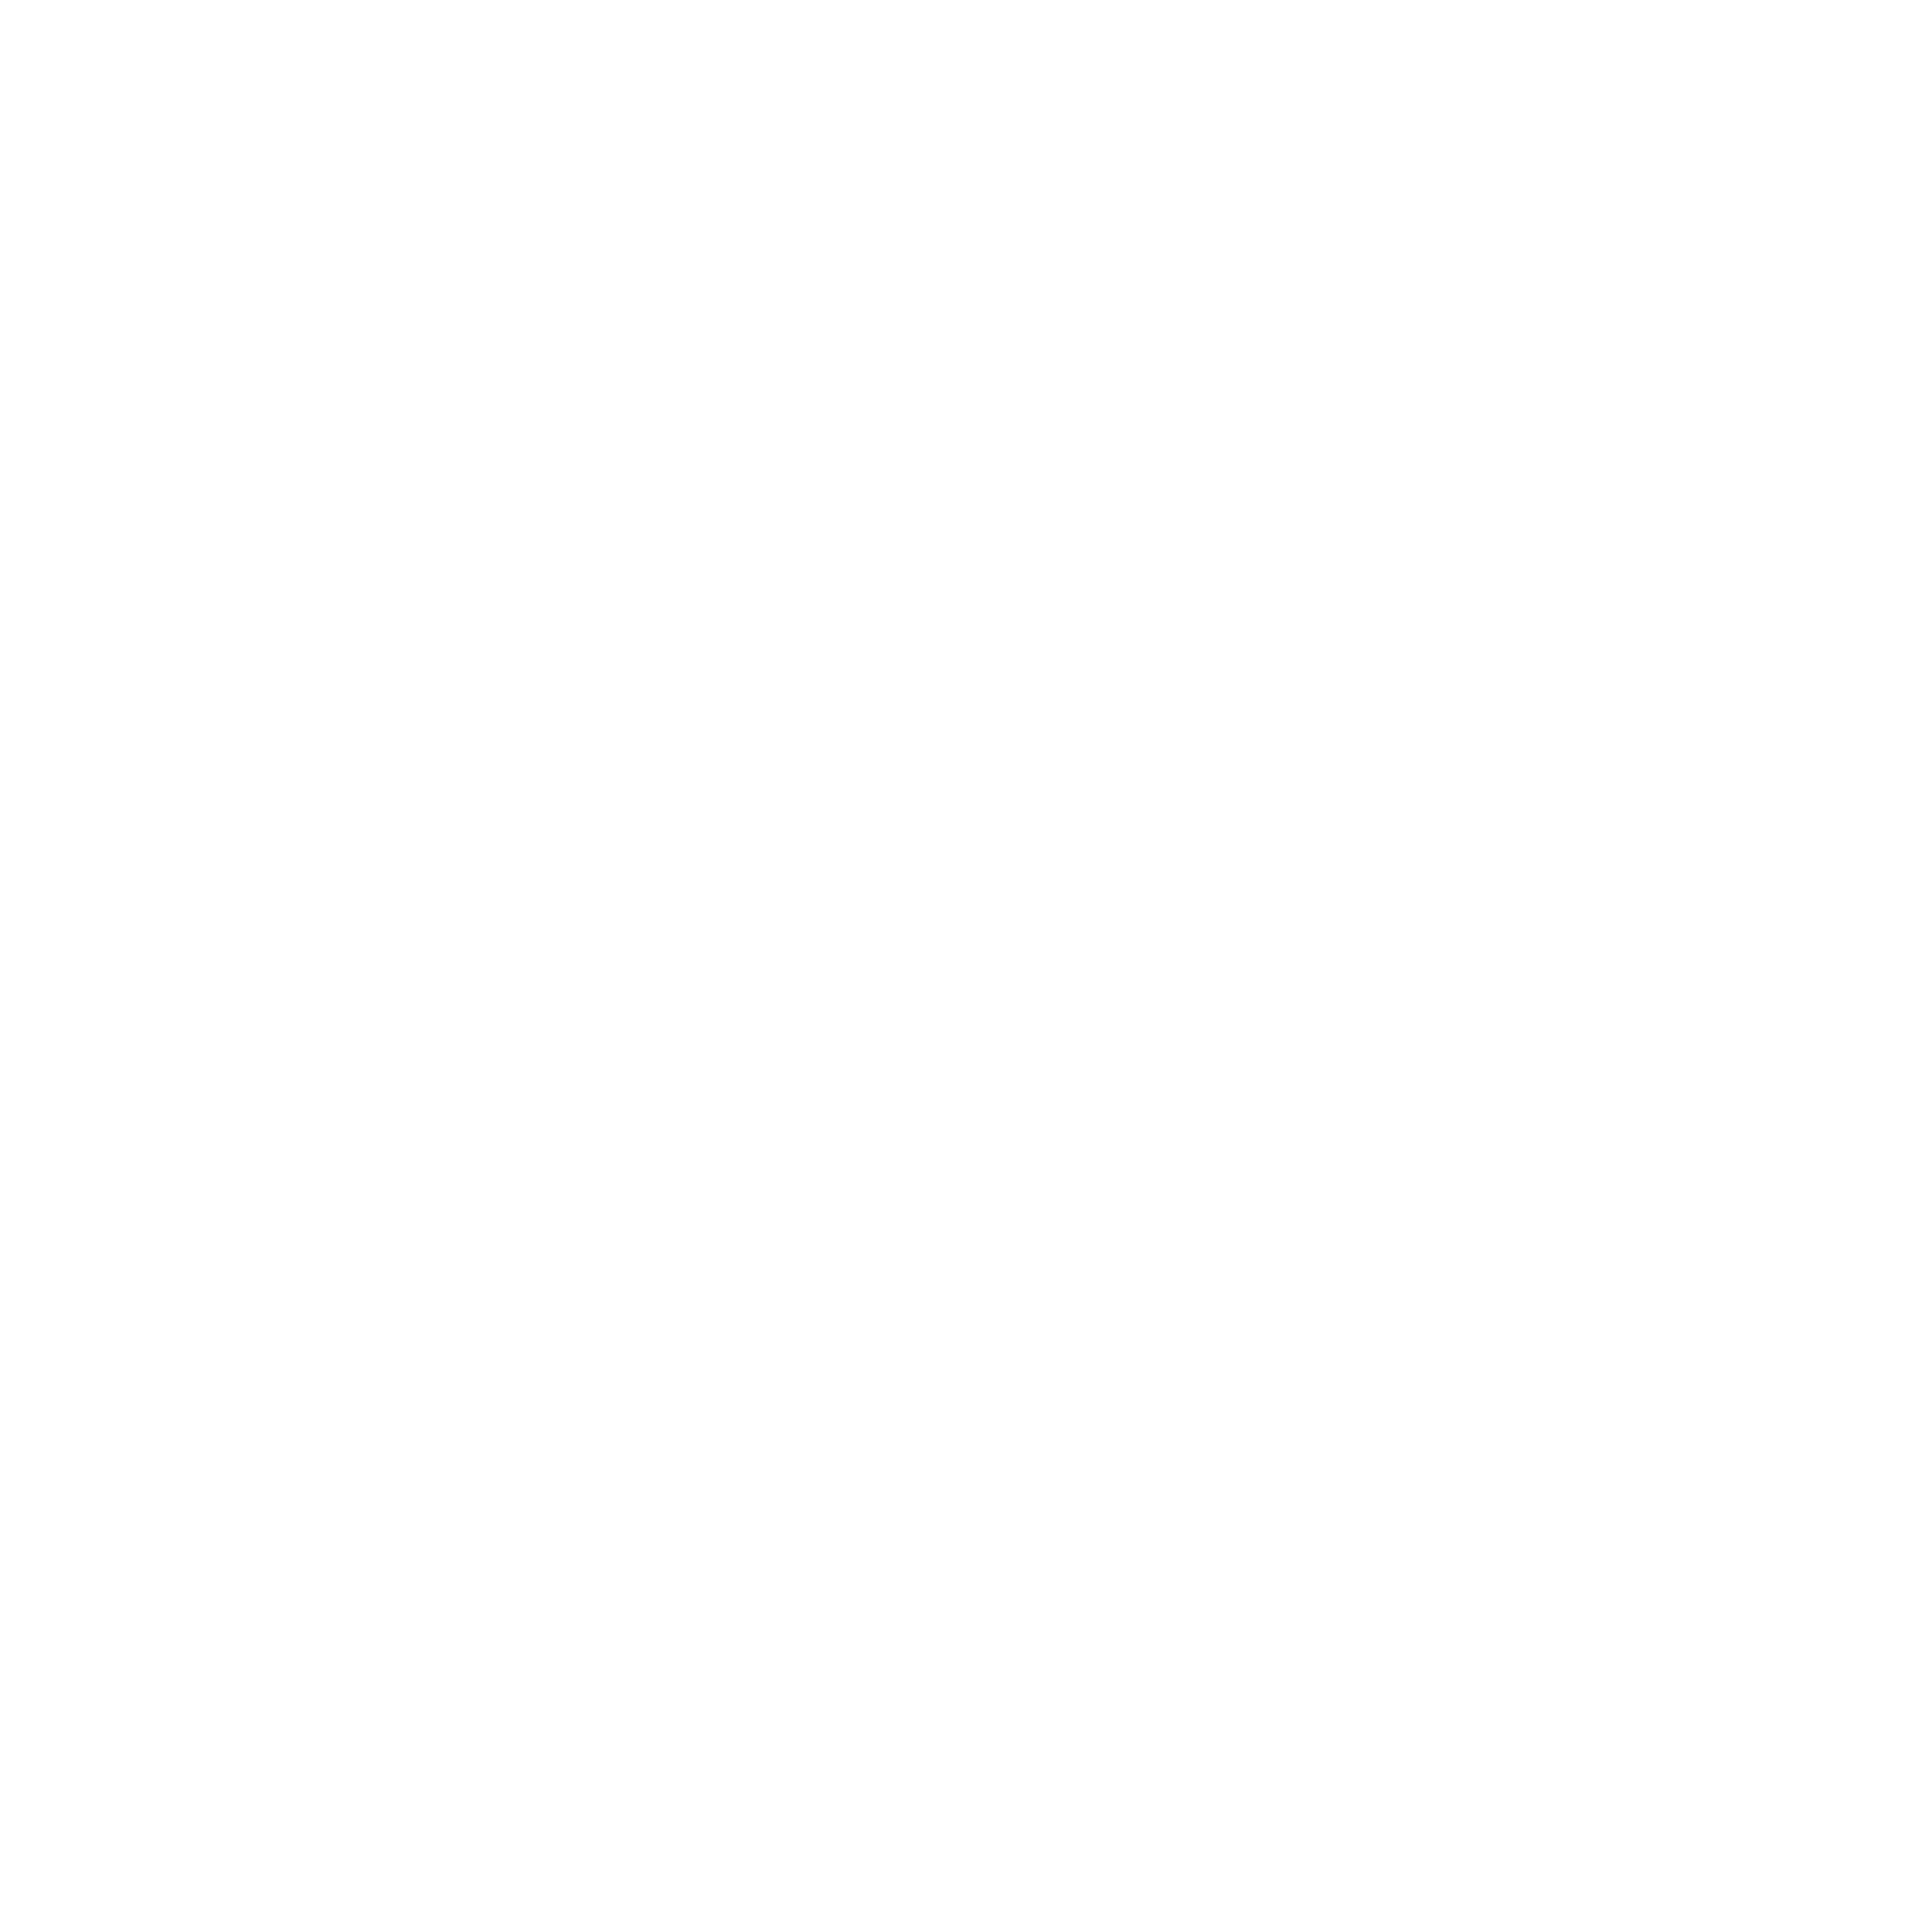 Milchversorgung Knepper - Transport / Logistik / Spedition / Großhandel / Lagerung